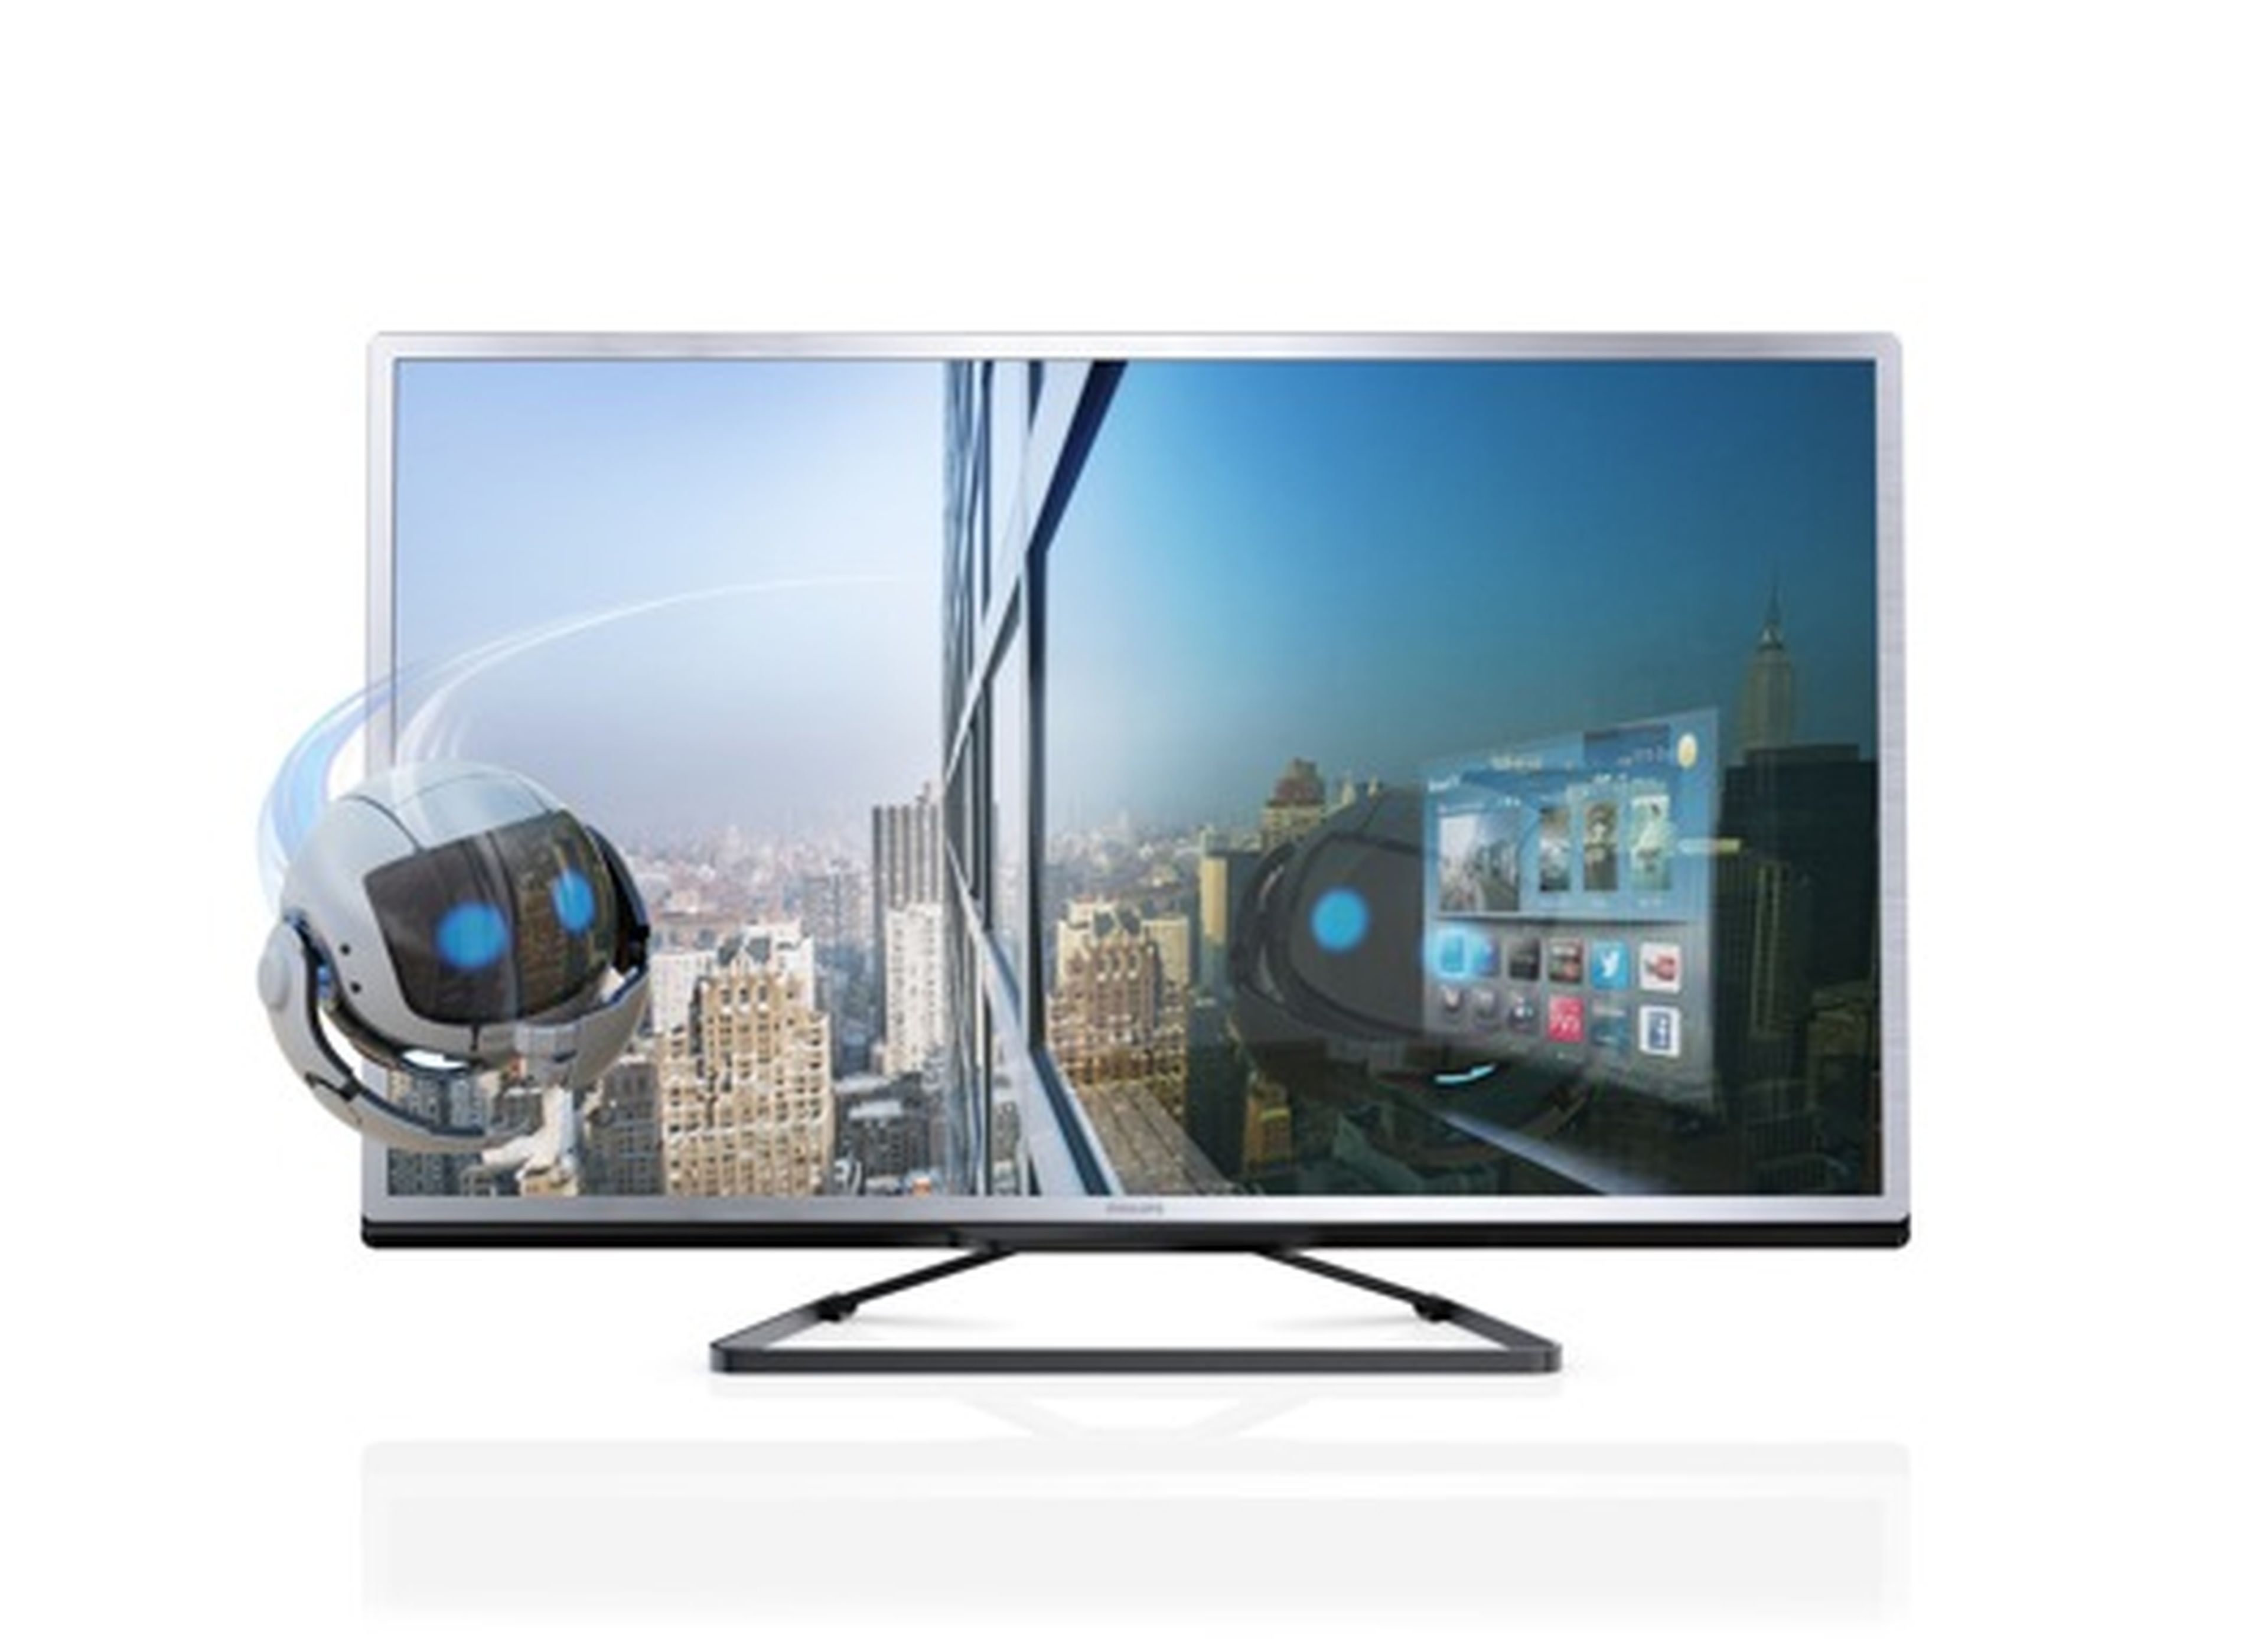 Nuevos Smart TV de Philips 4508 y 5008: diseño a buen precio